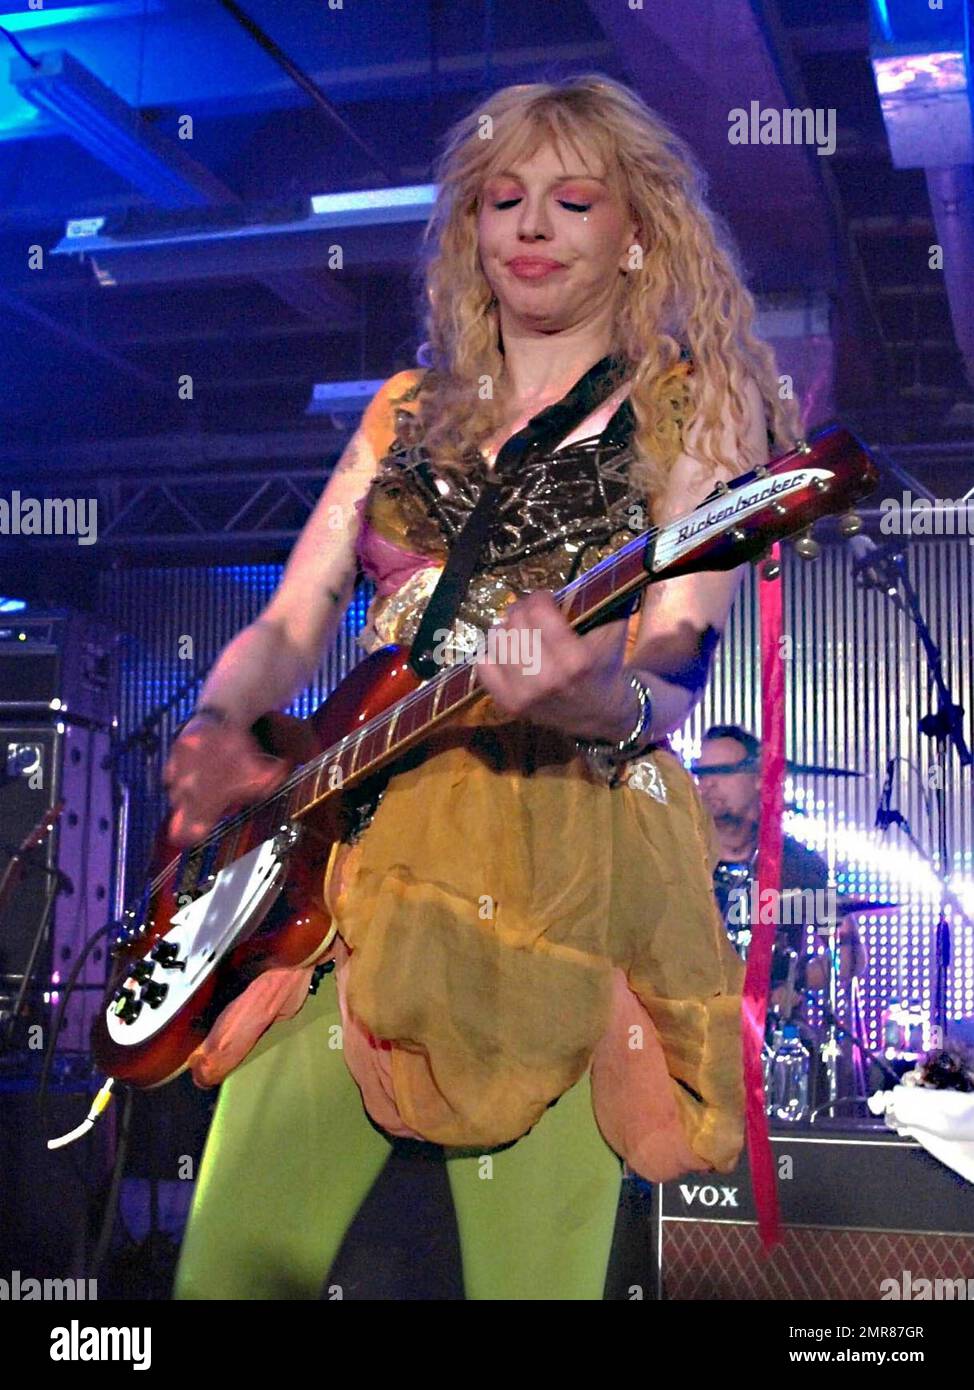 Courtney Love, vêtu d'une tenue colorée comprenant des chaussures en satin rouge et des collants verts, se produit avec son groupe Hole au Perez Hilton 2010 SXSW Party at the Whitley. Austin, Texas. 3/20/10. . Banque D'Images